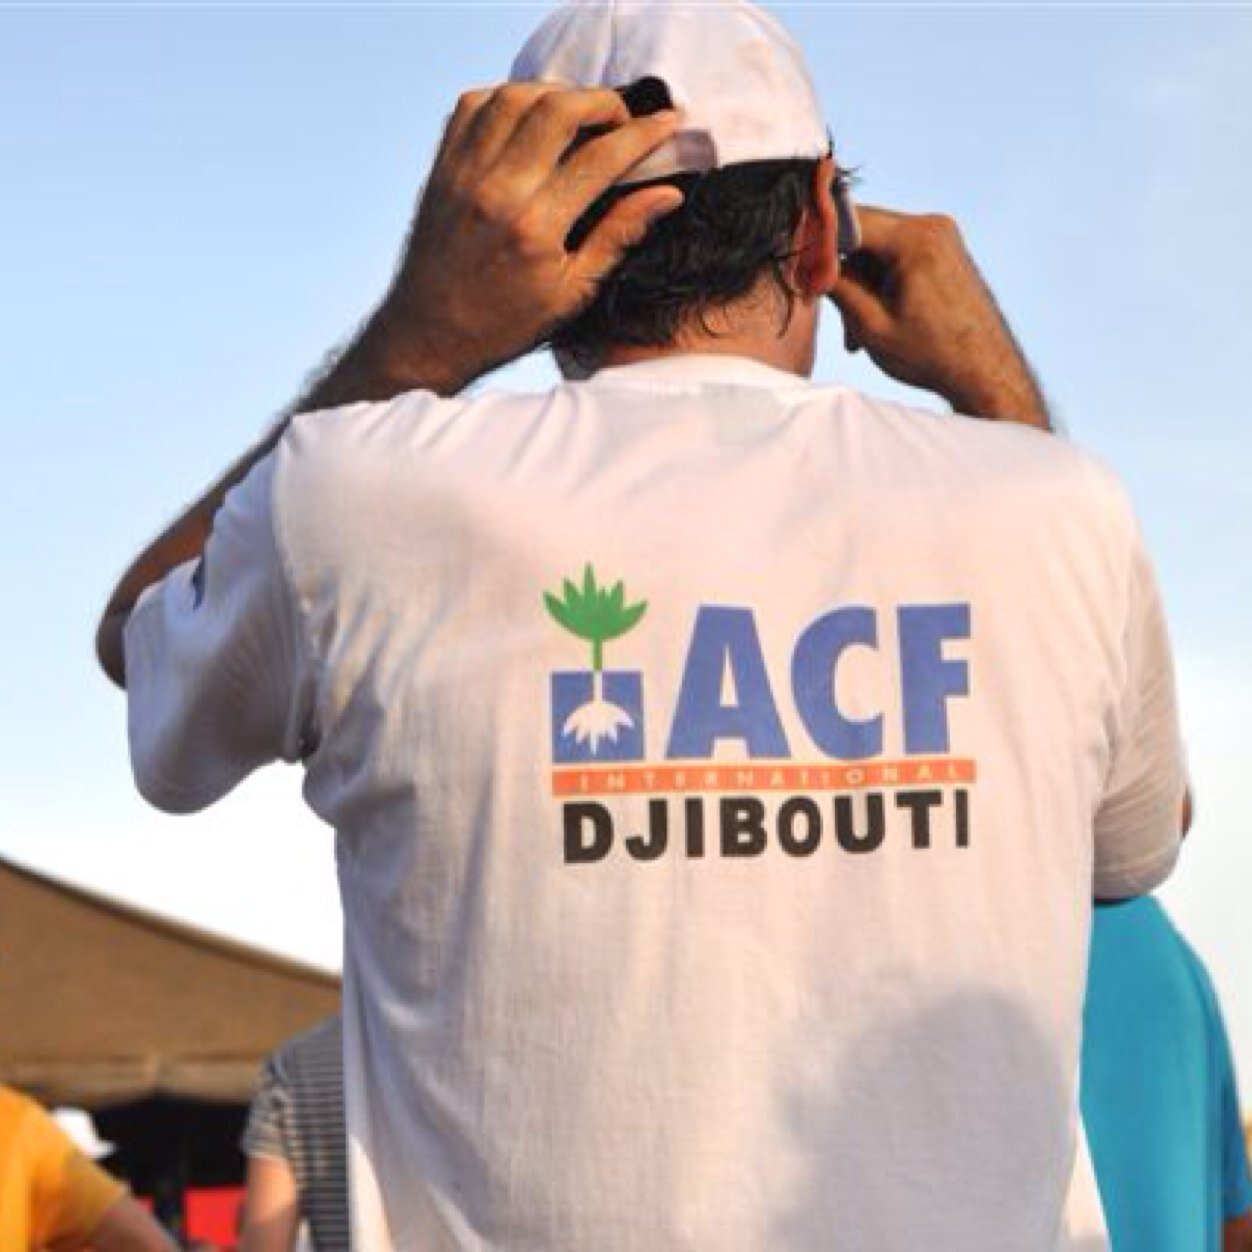 Action Contre la Faim vient en aide aux populations les plus vulnérables de la Republique de Djibouti en partenariat avec les institutions publiques et civiles